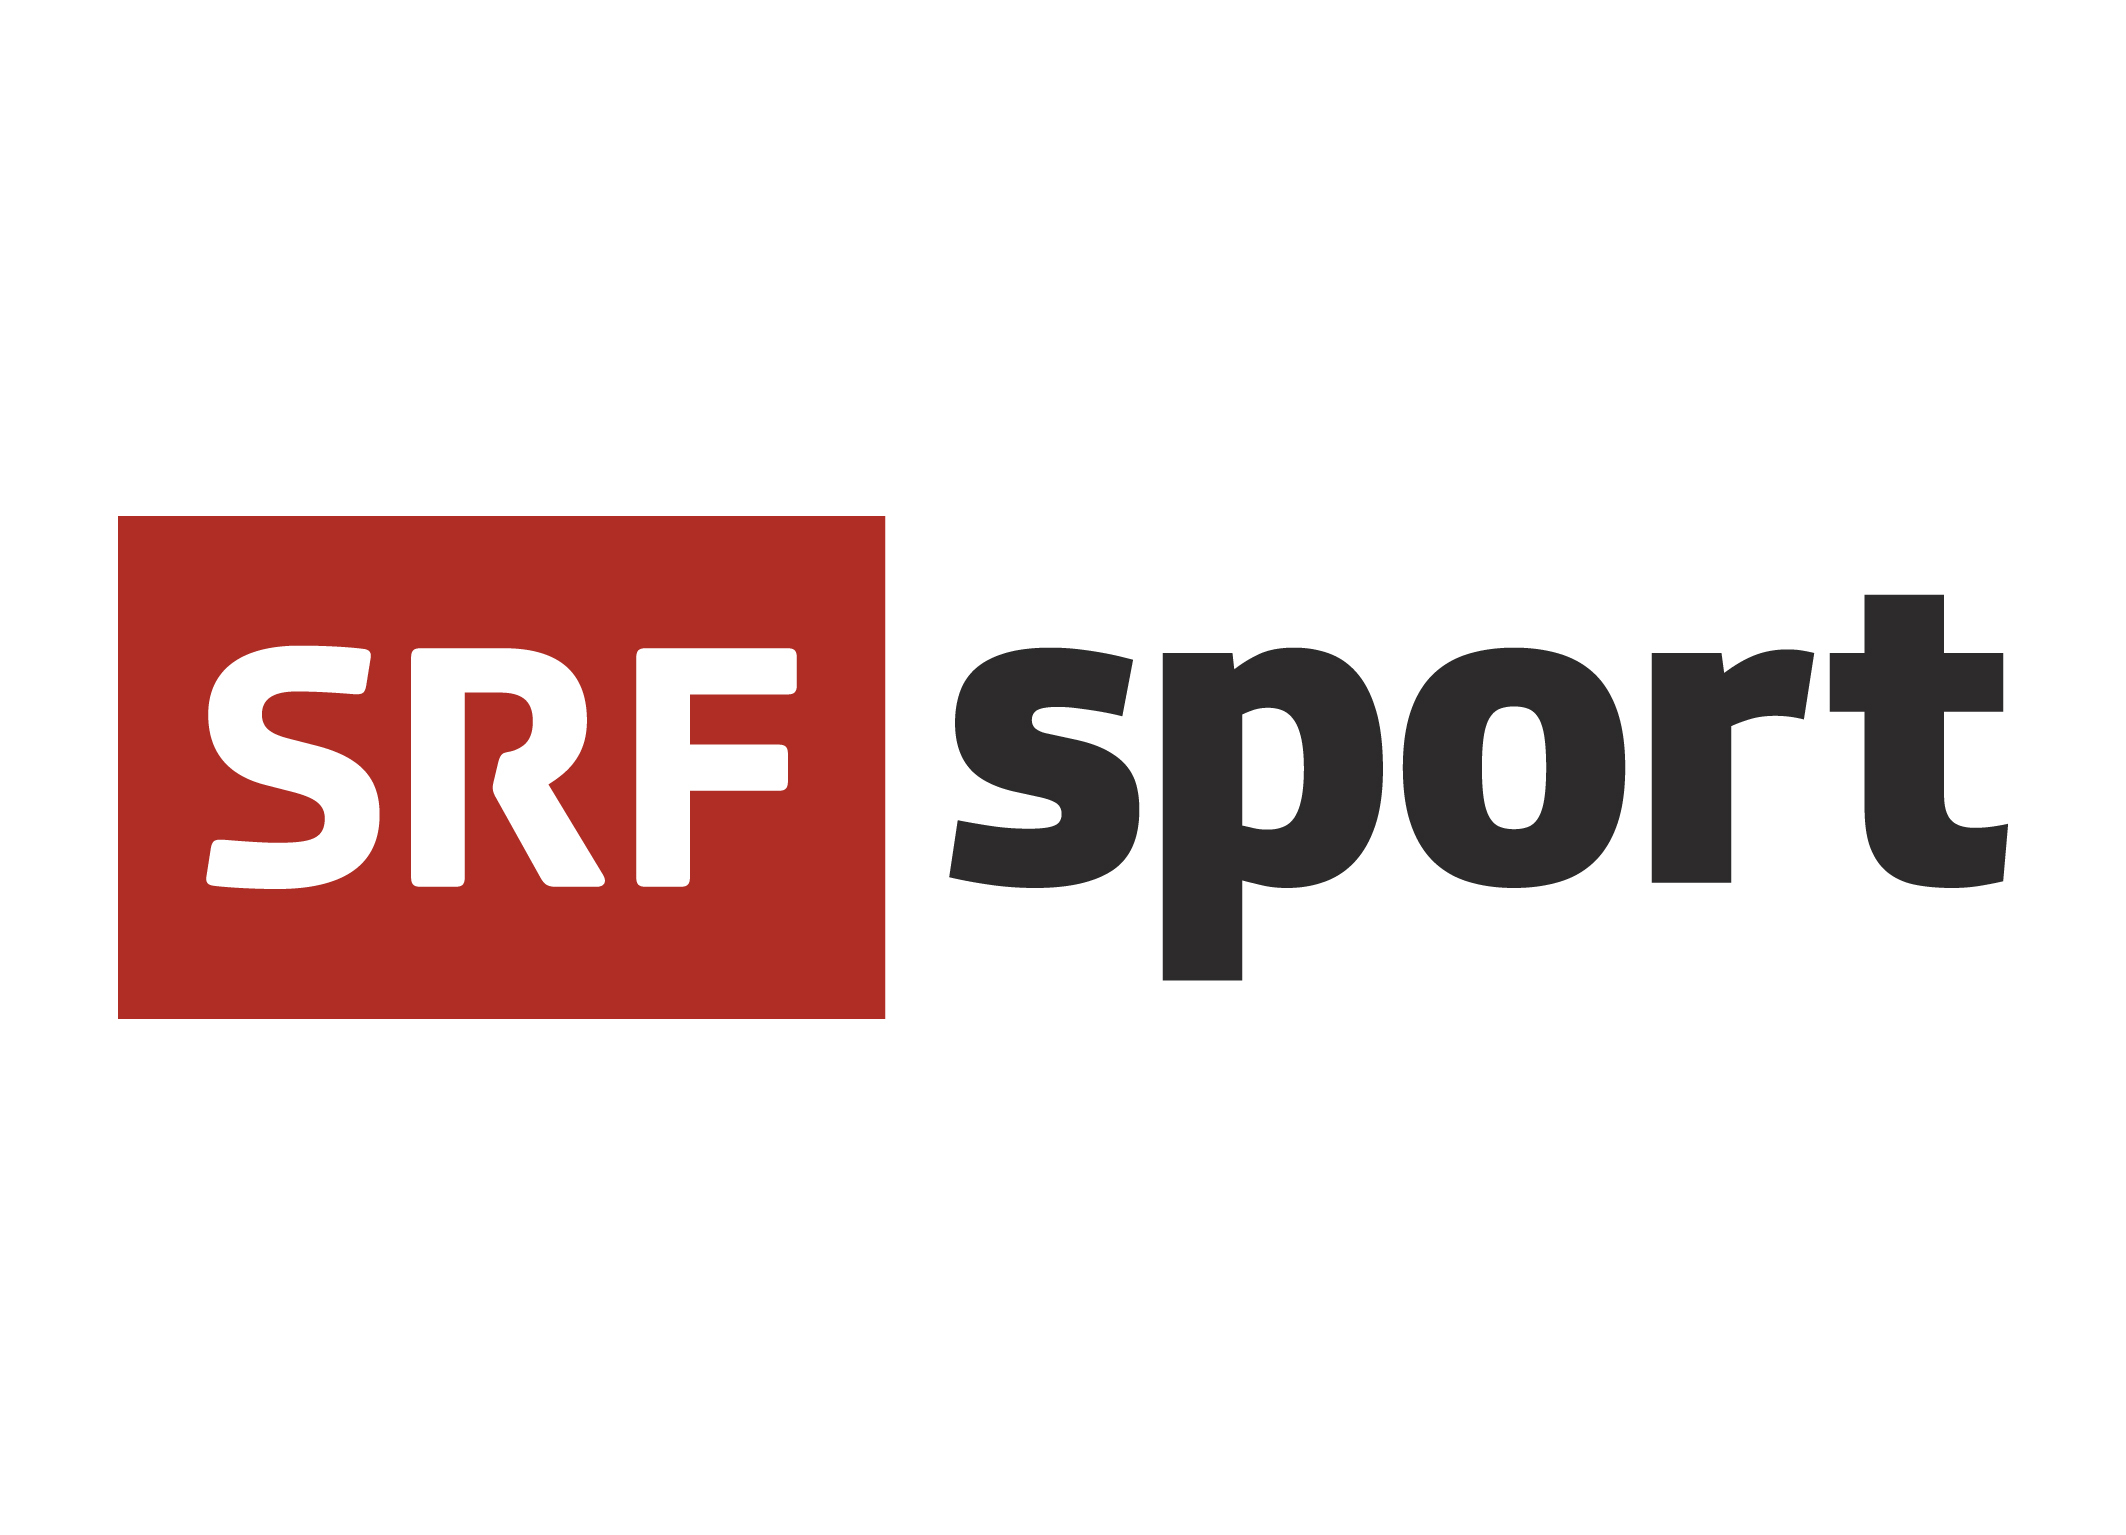 SRF sport Logo